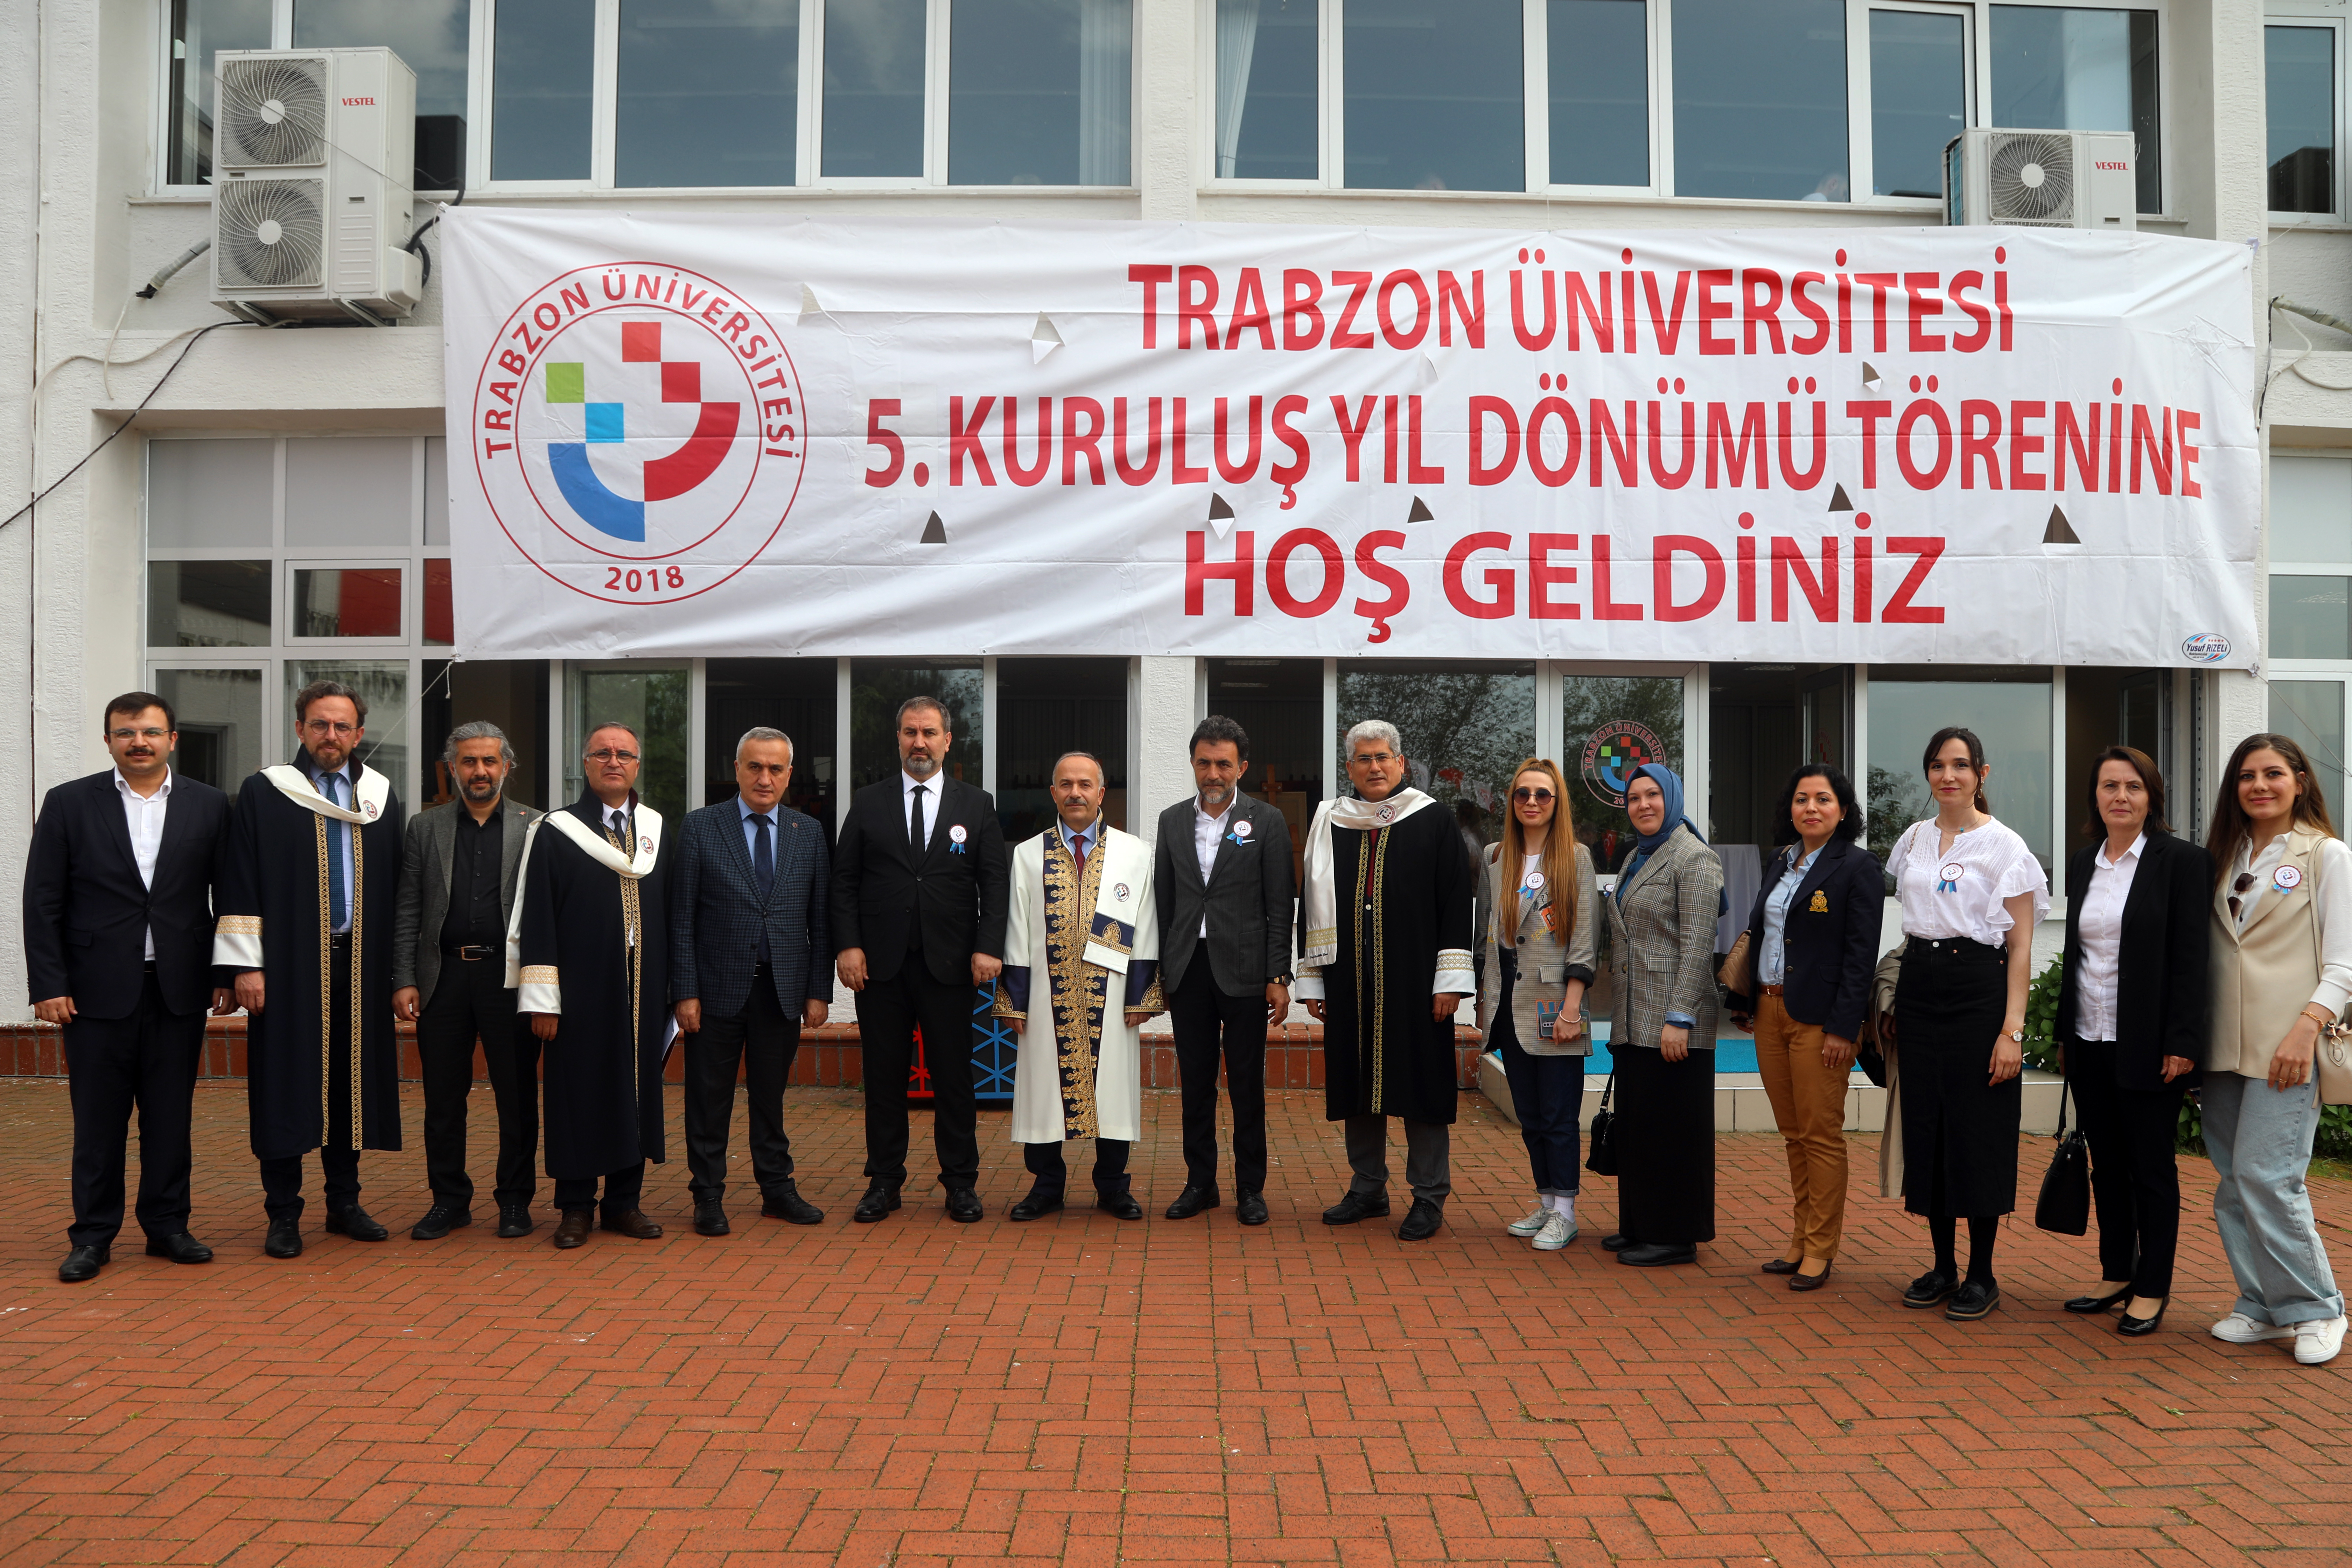 Trabzon Üniversitesi 5. Kuruluş Yıldönümünde Coşkulu Kutlama

